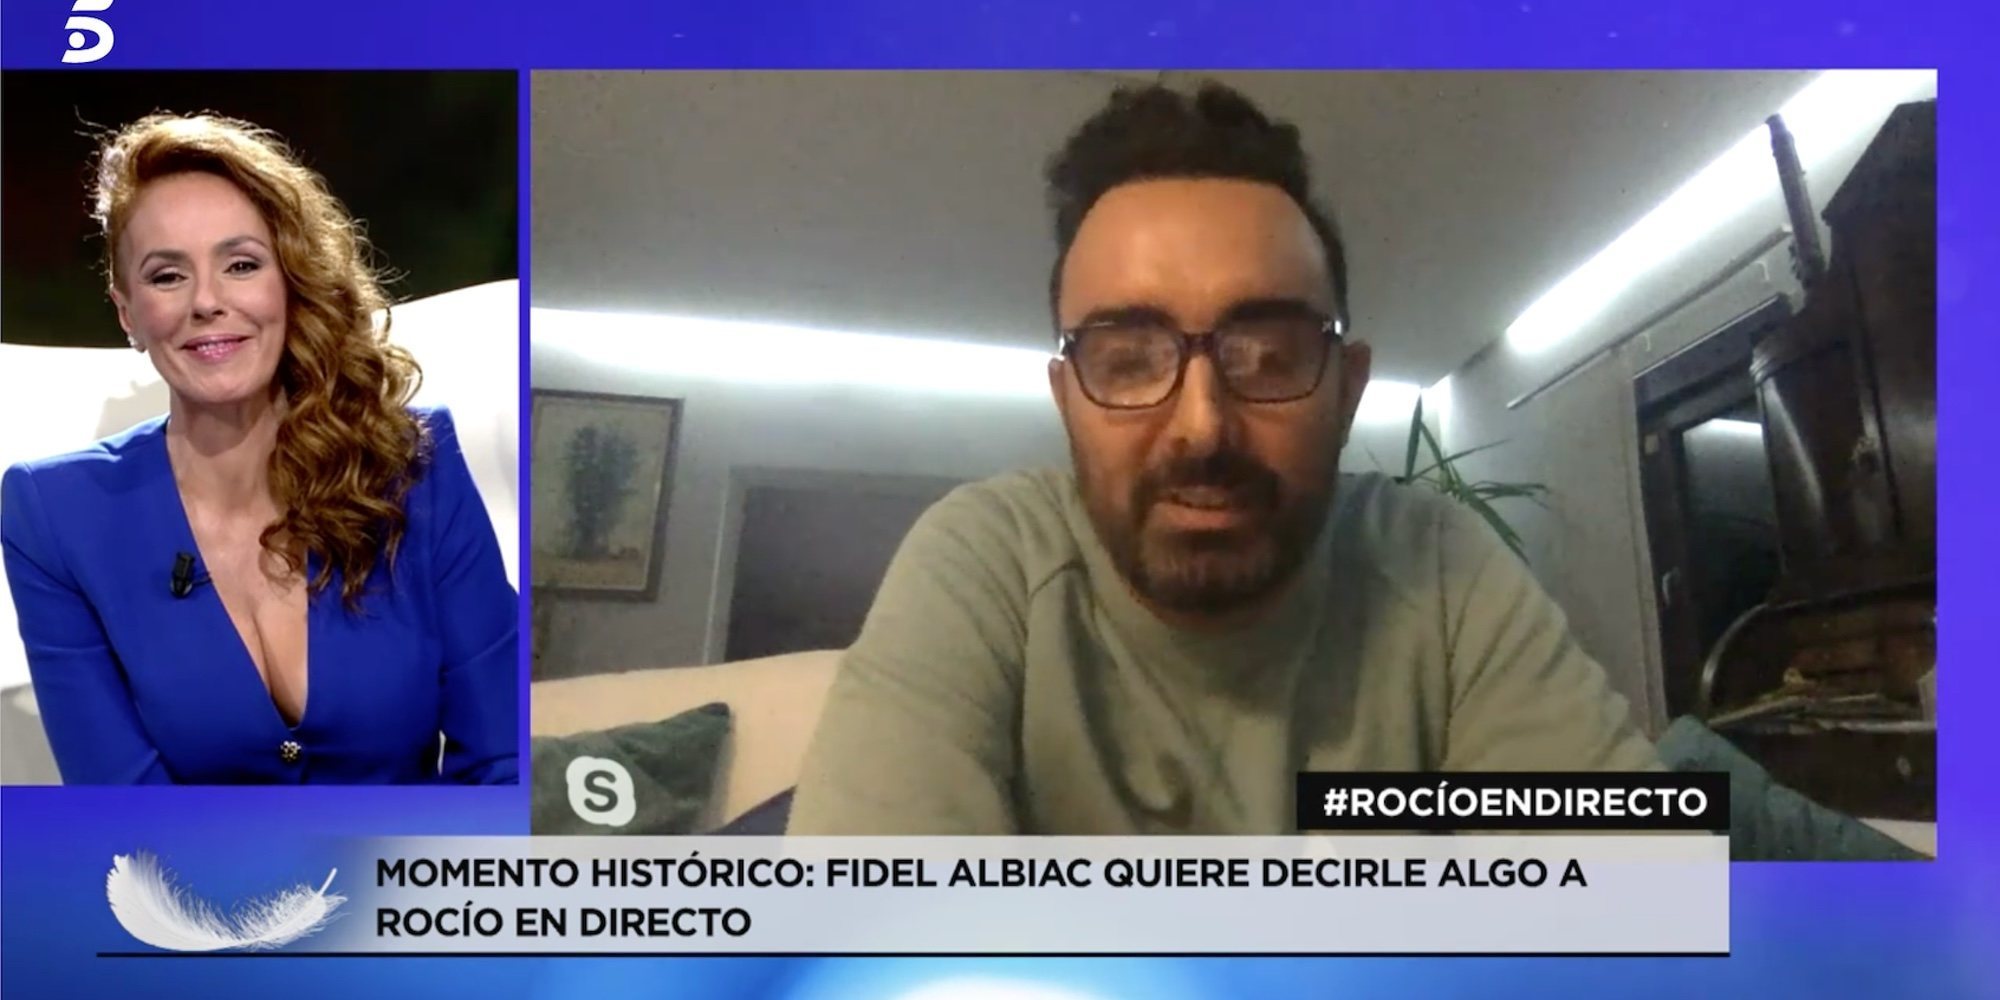 Fidel Albiac apoya en directo a Rocío Carrasco: "El silencio nos ha perjudicado"